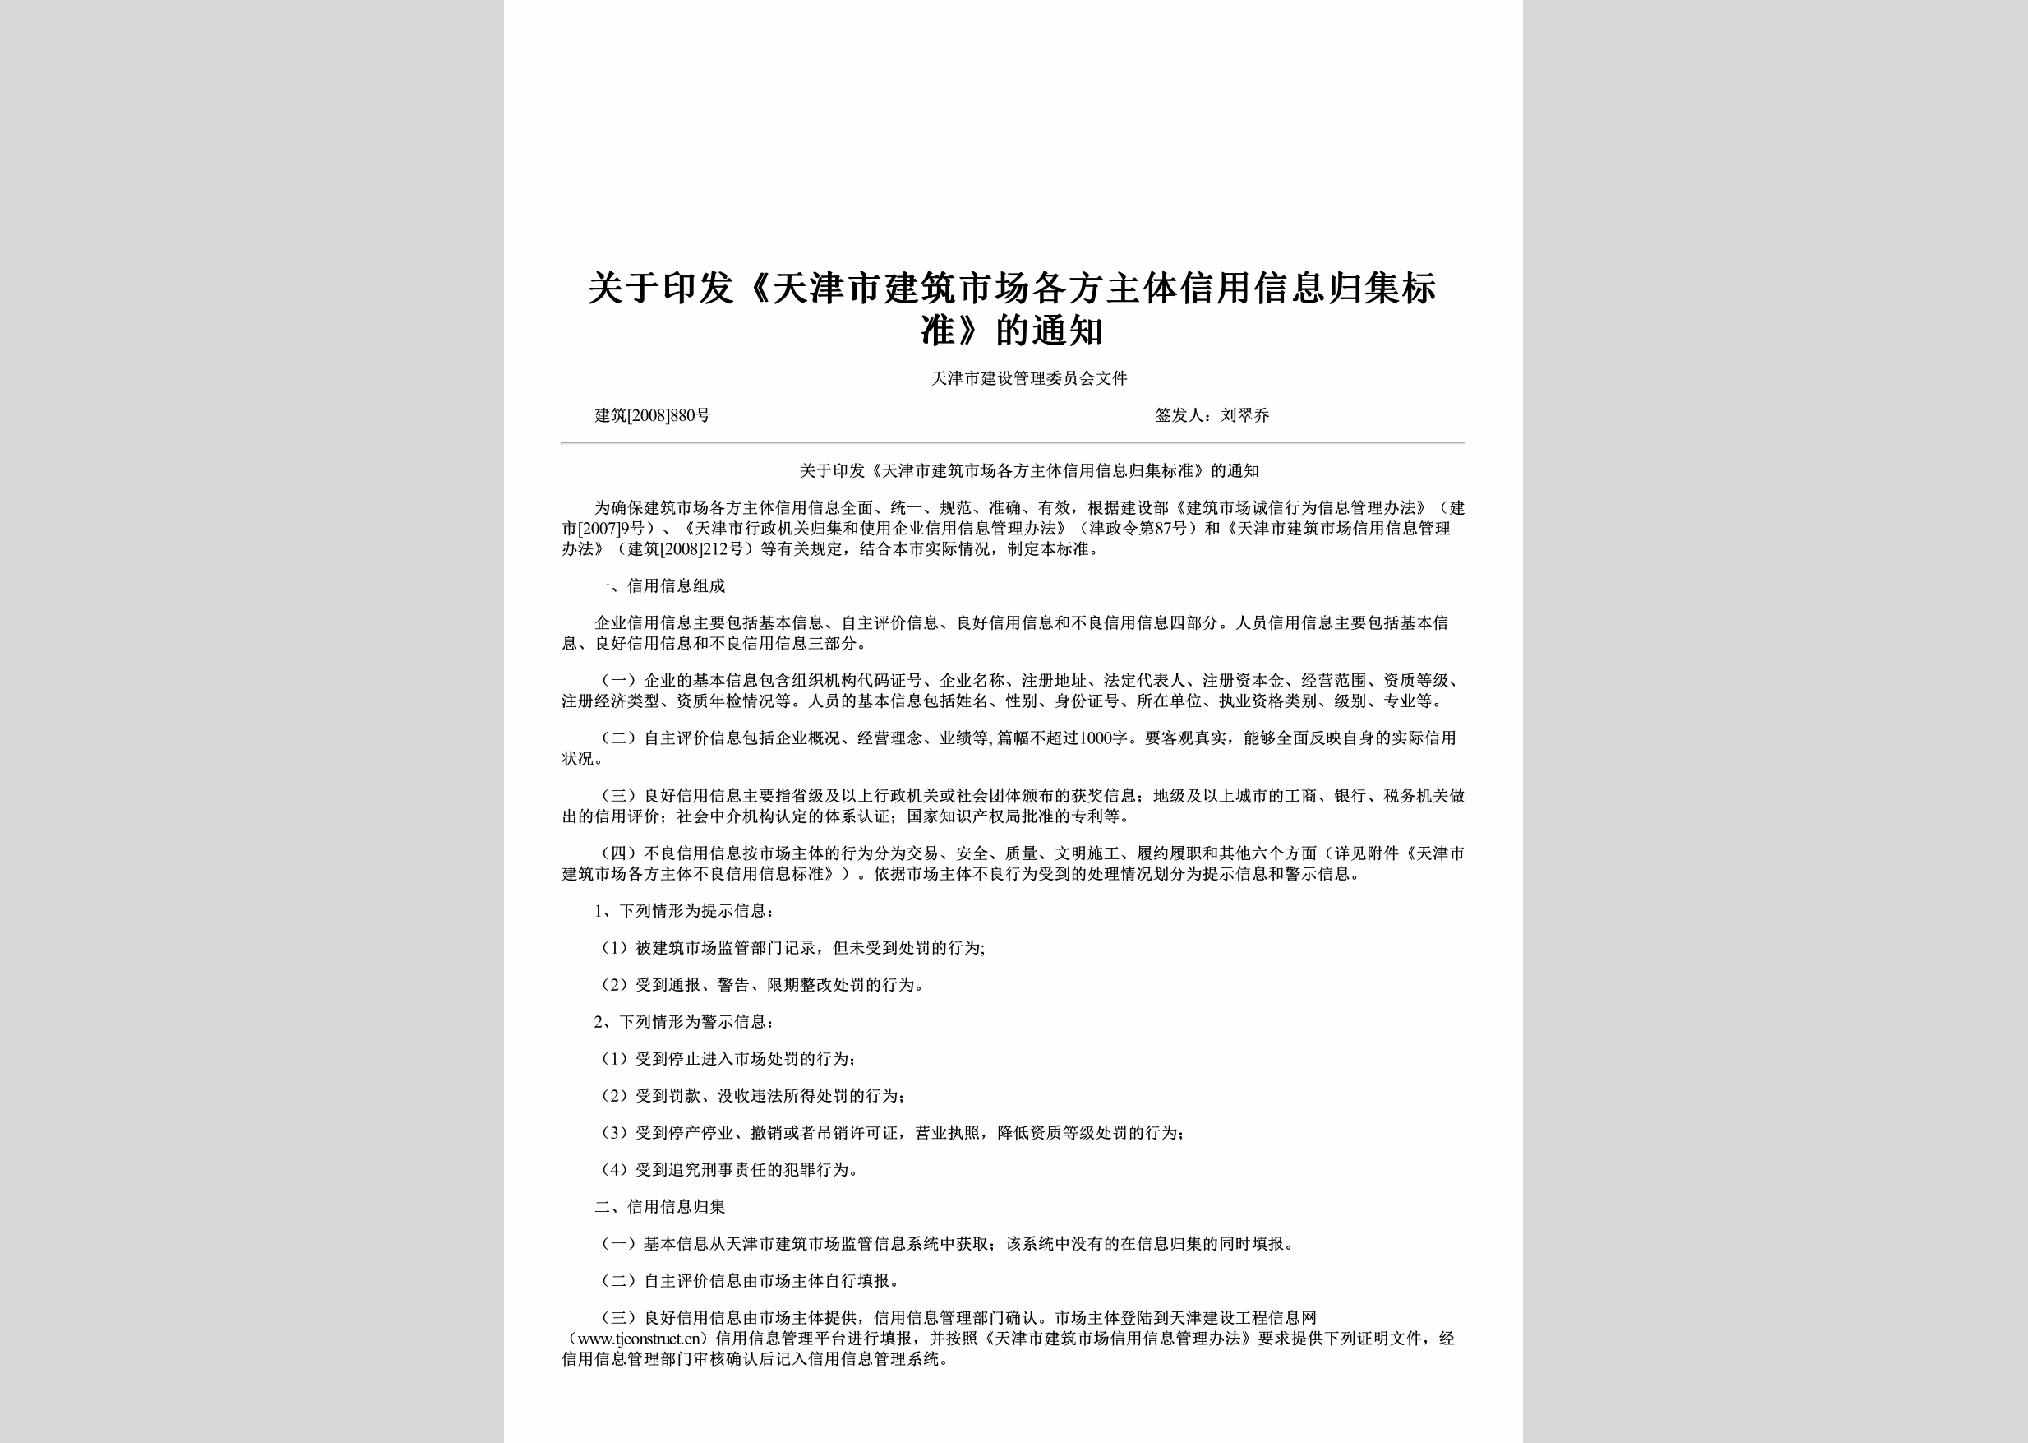 建筑[2008]880号：关于印发《天津市建筑市场各方主体信用信息归集标准》的通知